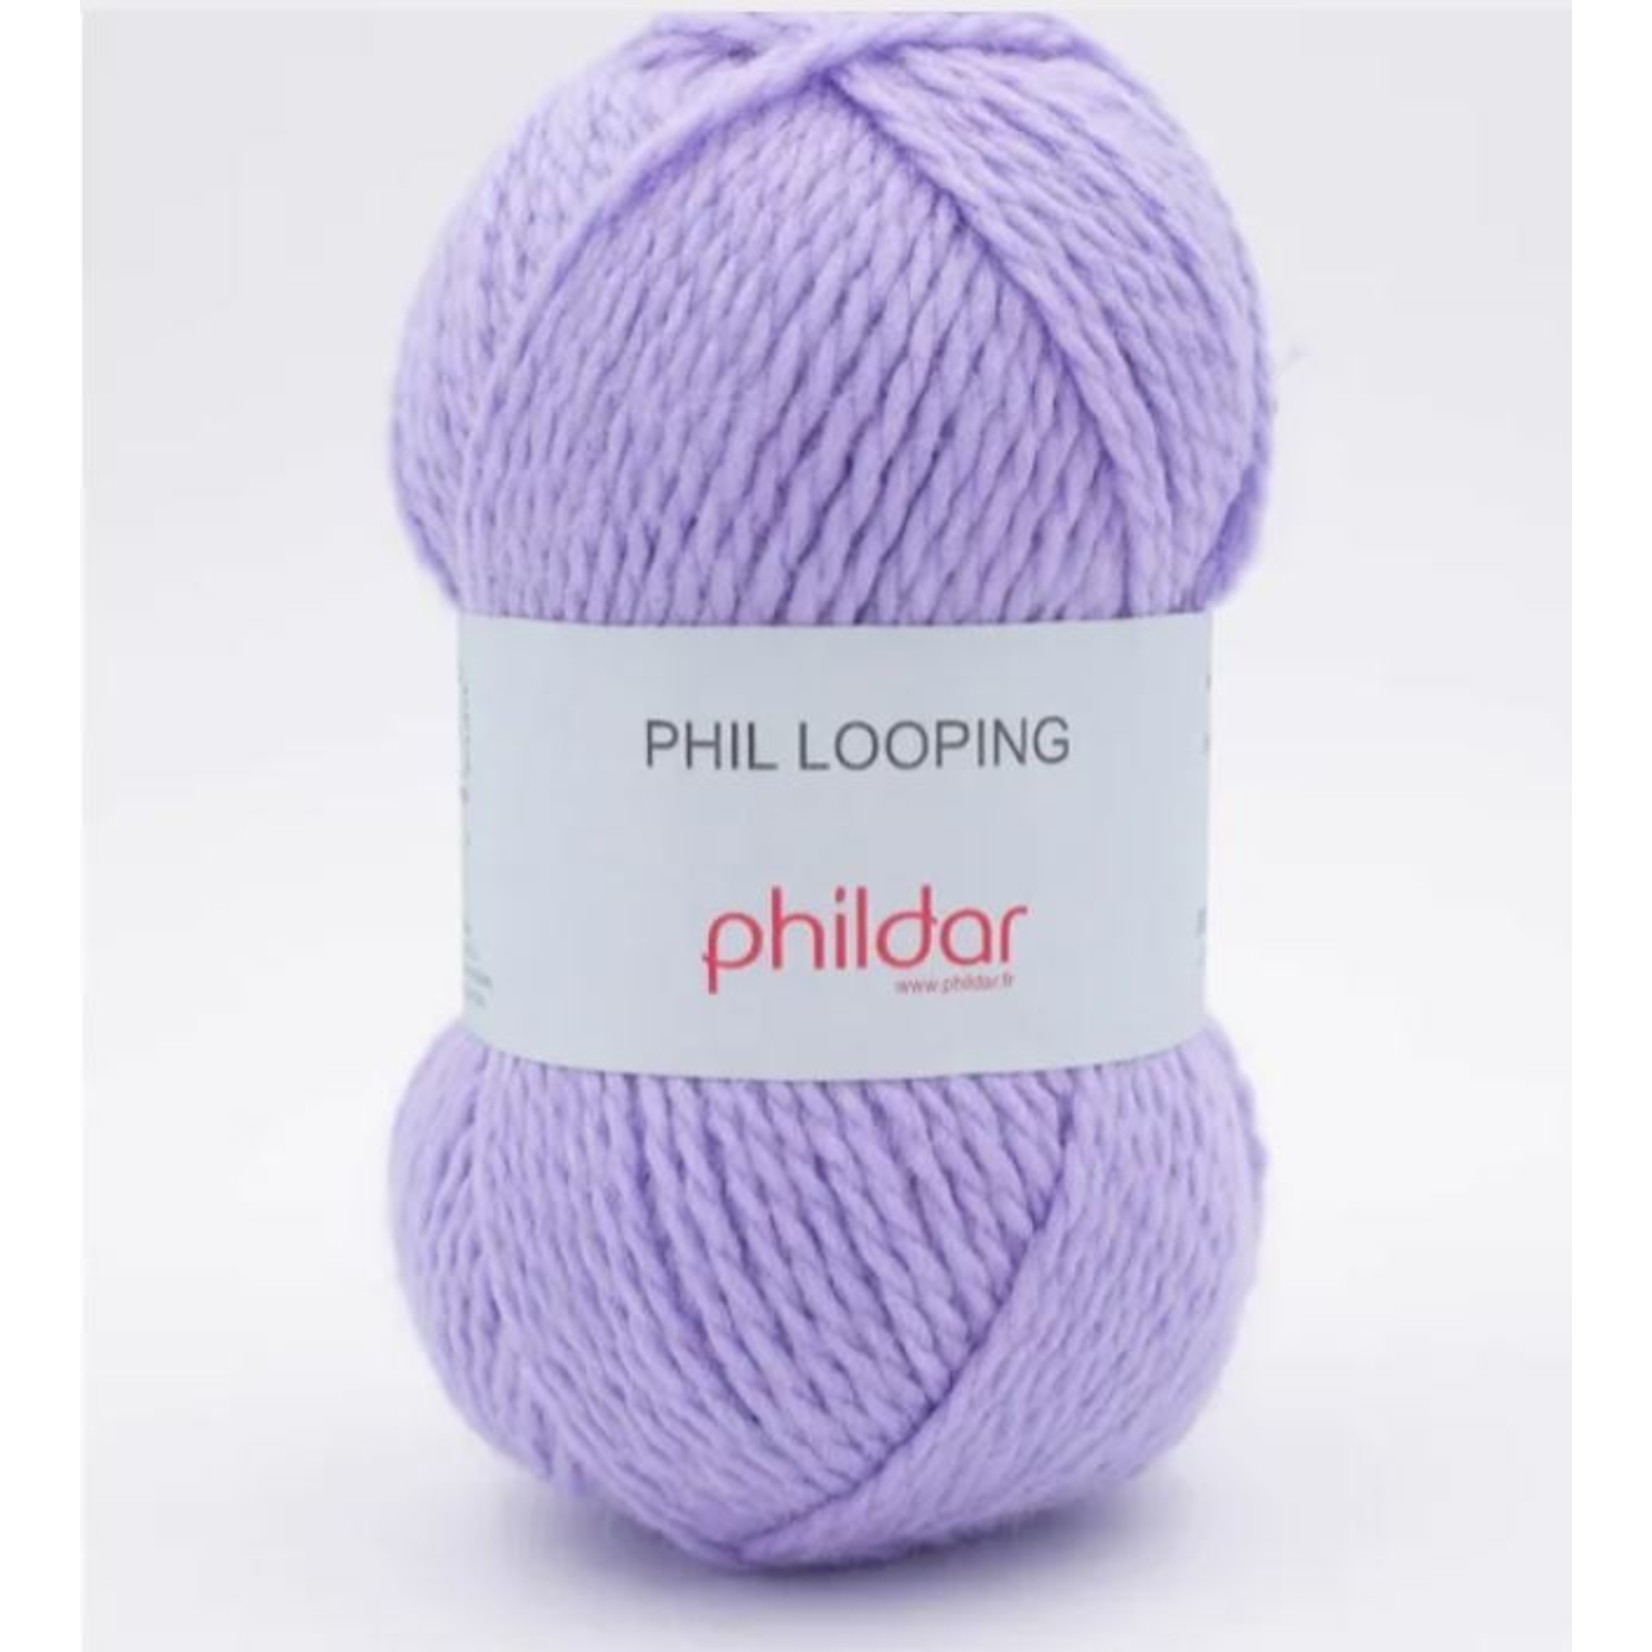 Phildar Phil Looping Jacinthe